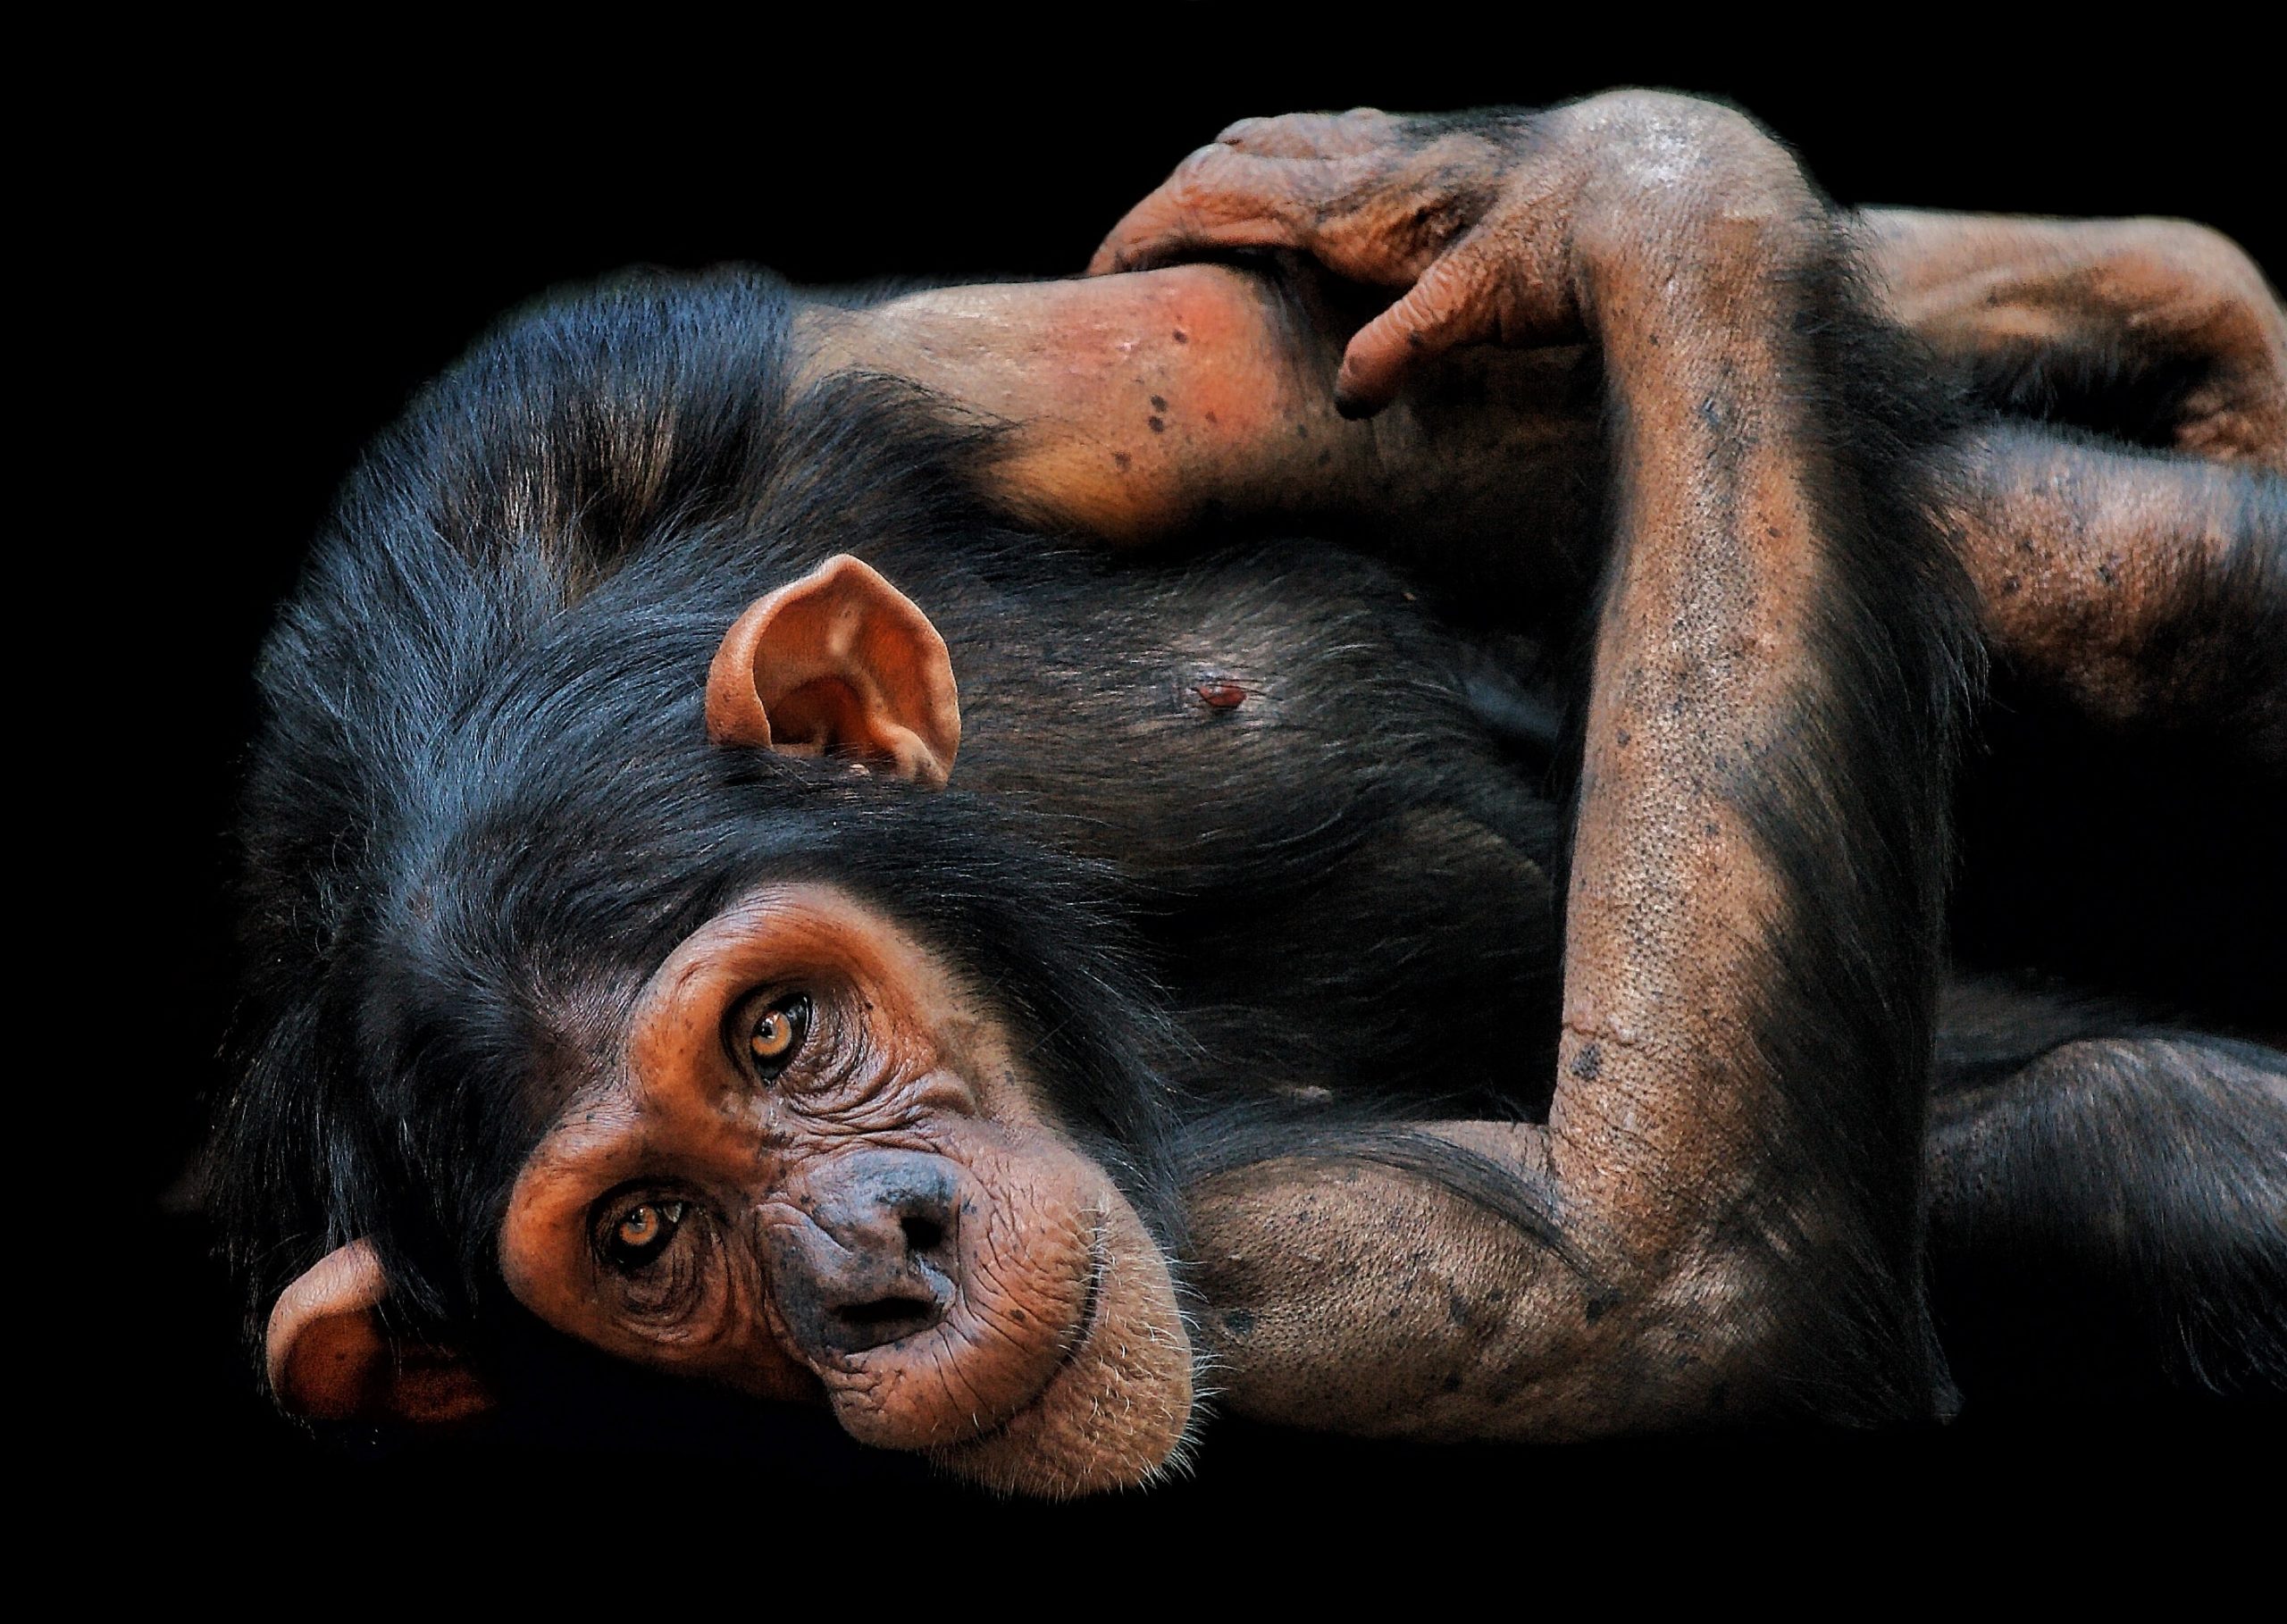 La OMS cambiará el nombre a la viruela del mono para «evitar que sea estigmatizante»